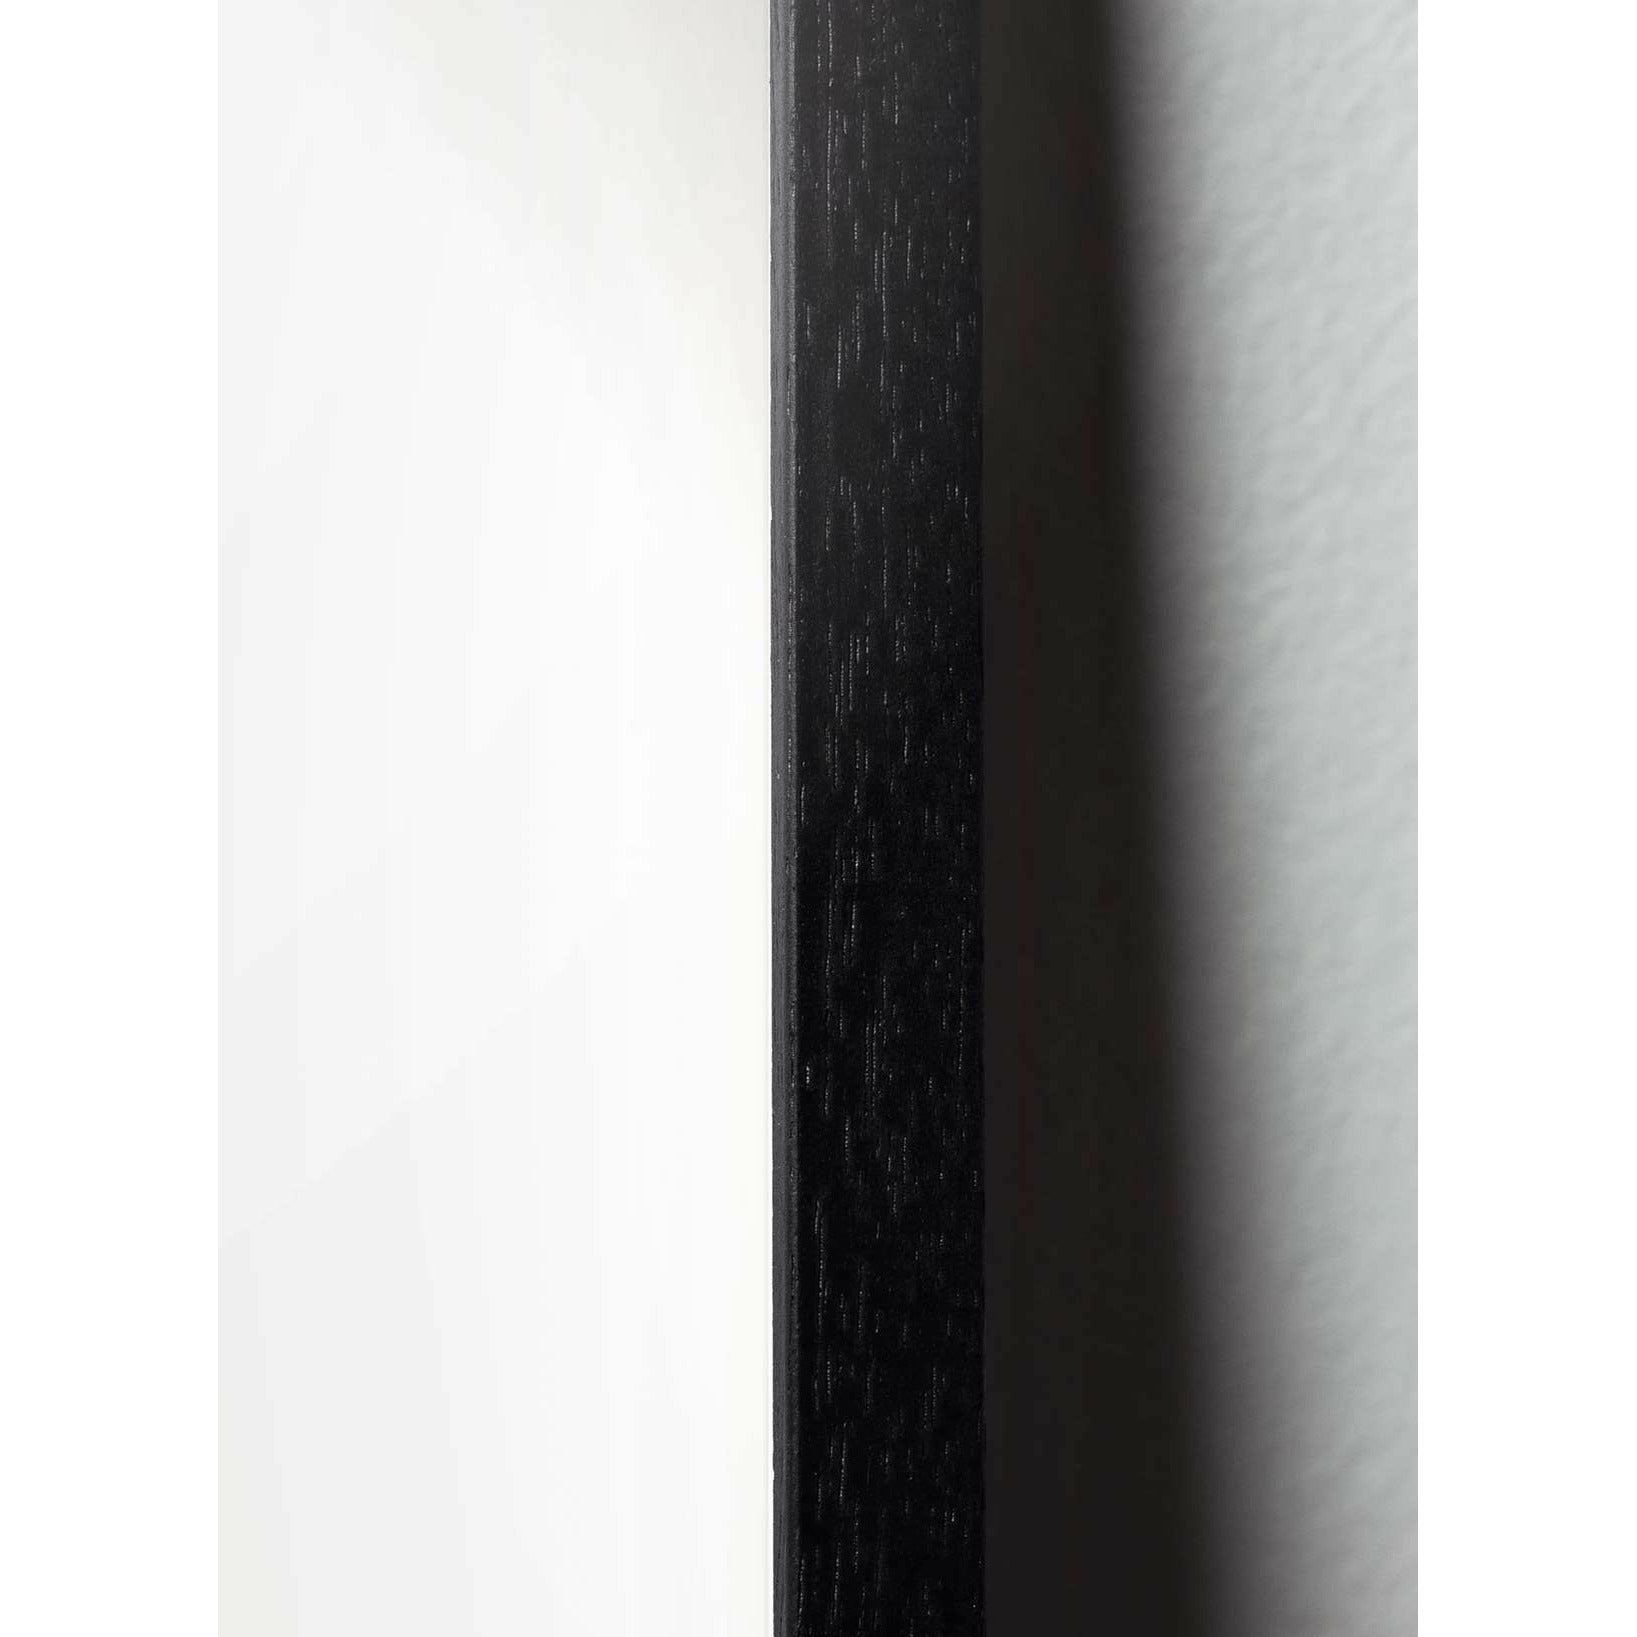 Pomysły plakat linii mrówek, rama w czarnym lakierowanym drewnie 50x70 cm, białe tło